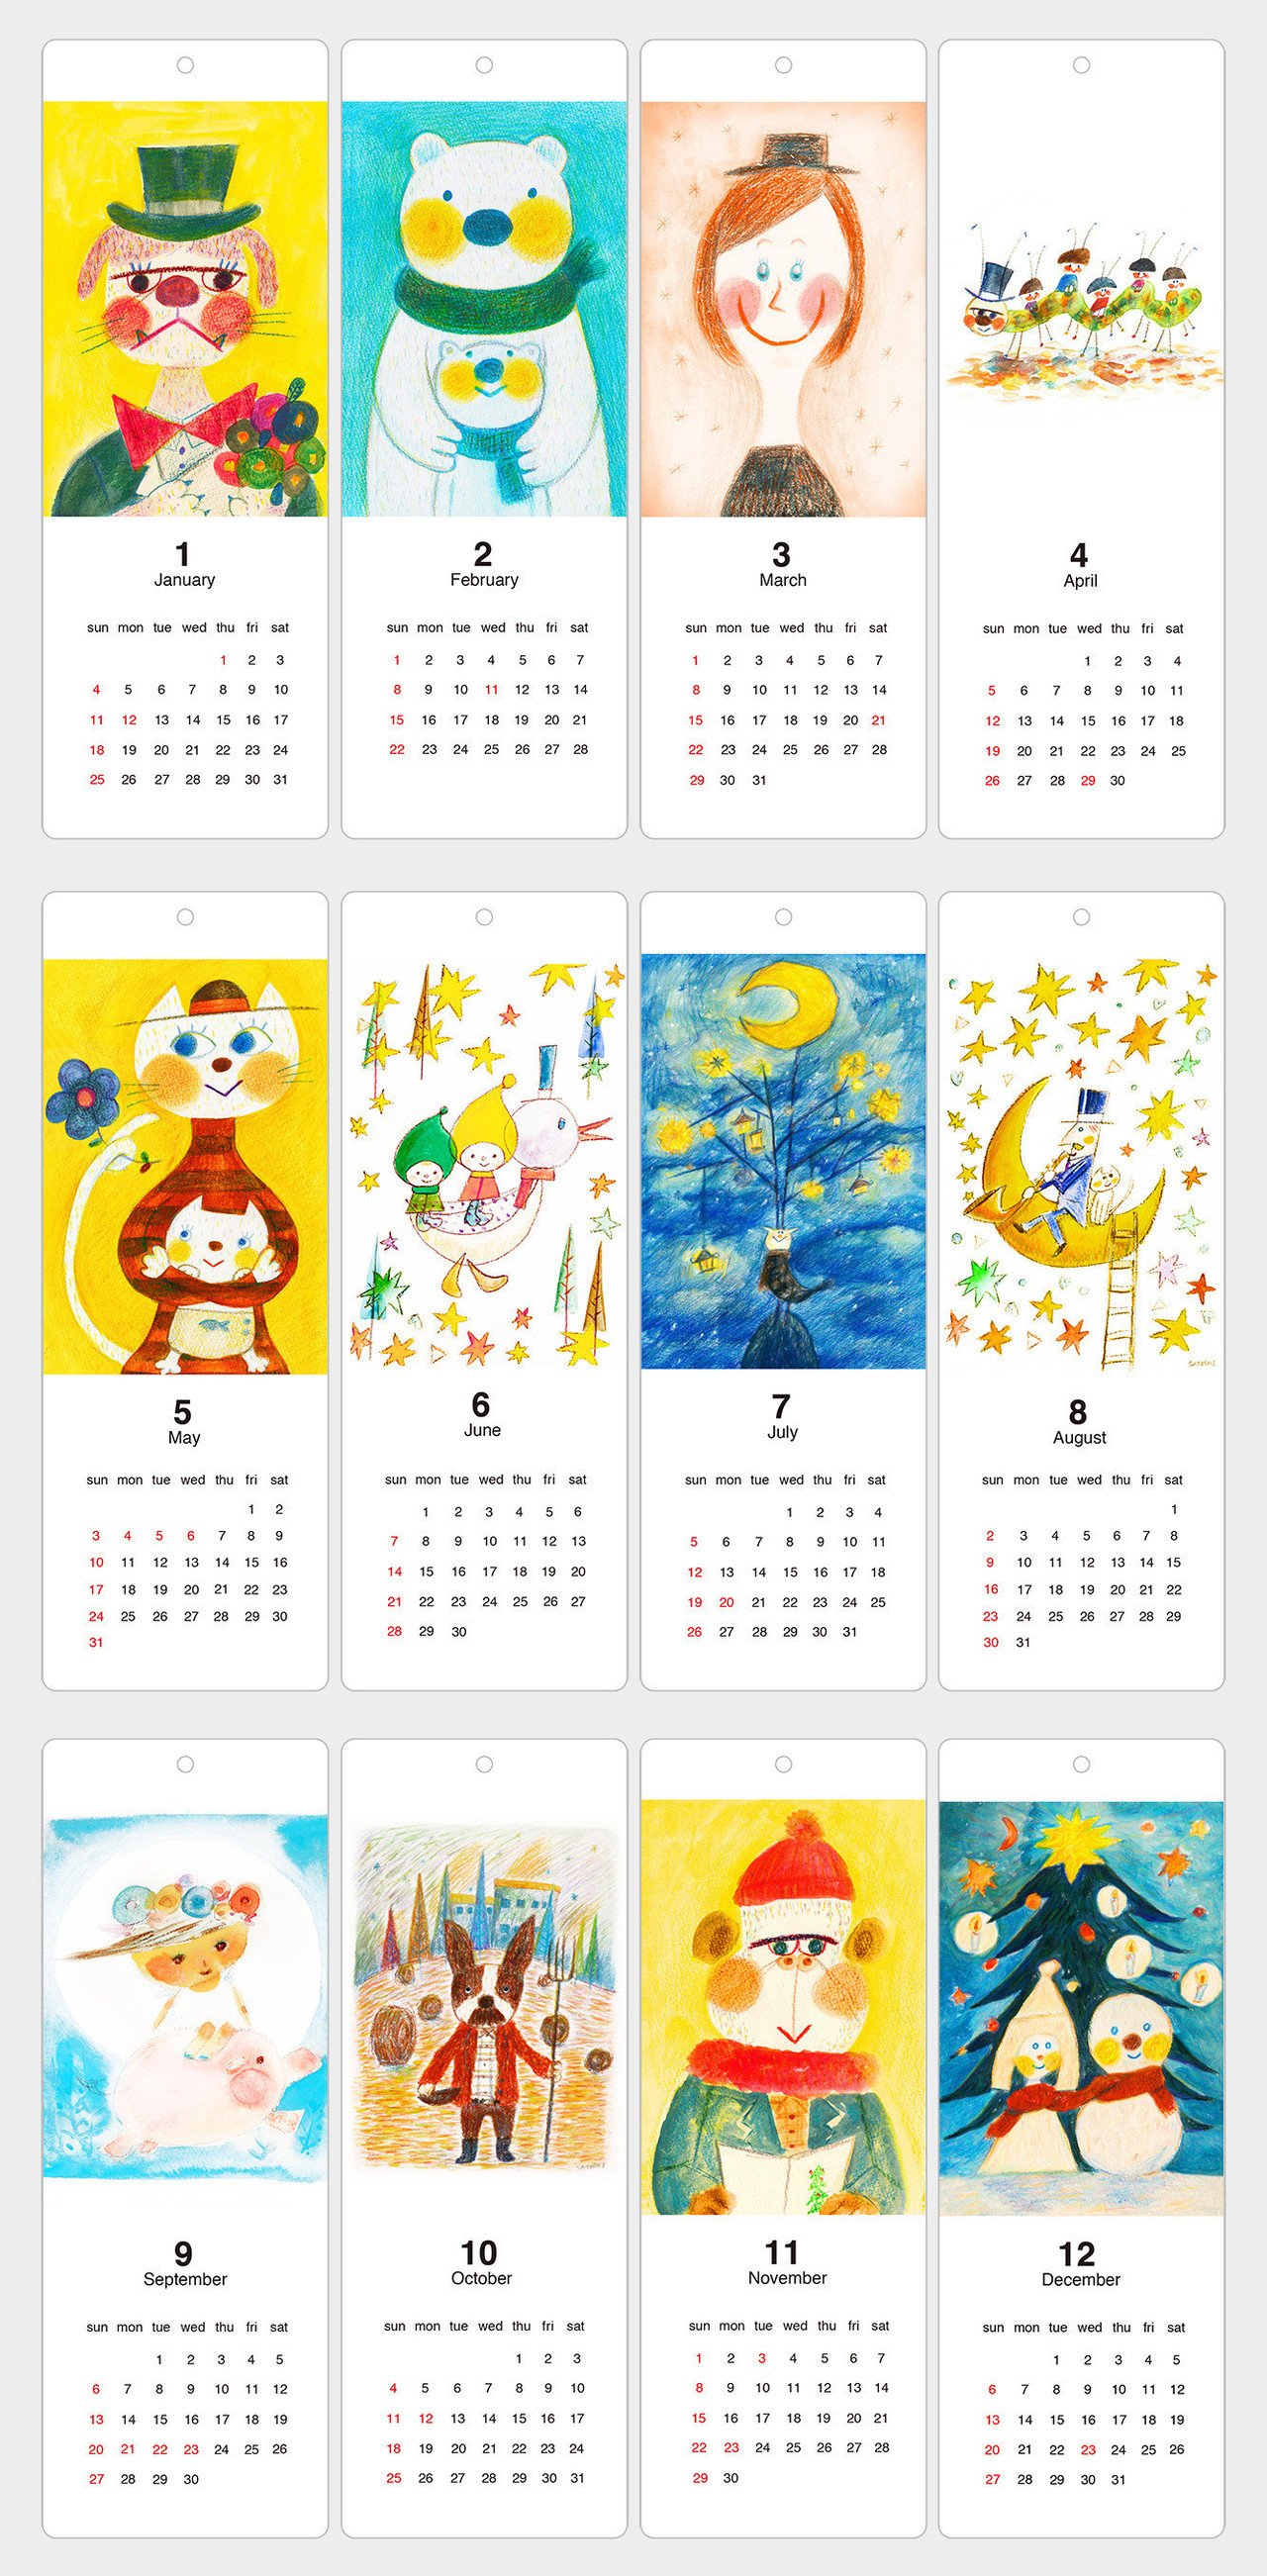 15年イラストカレンダーb販売中 チェックしてみて下さいね Http Minne Com Items 水彩画を中心としたオリジナルイラストのカレンダーです 吊るして飾れる Satoshi Sugiura Note